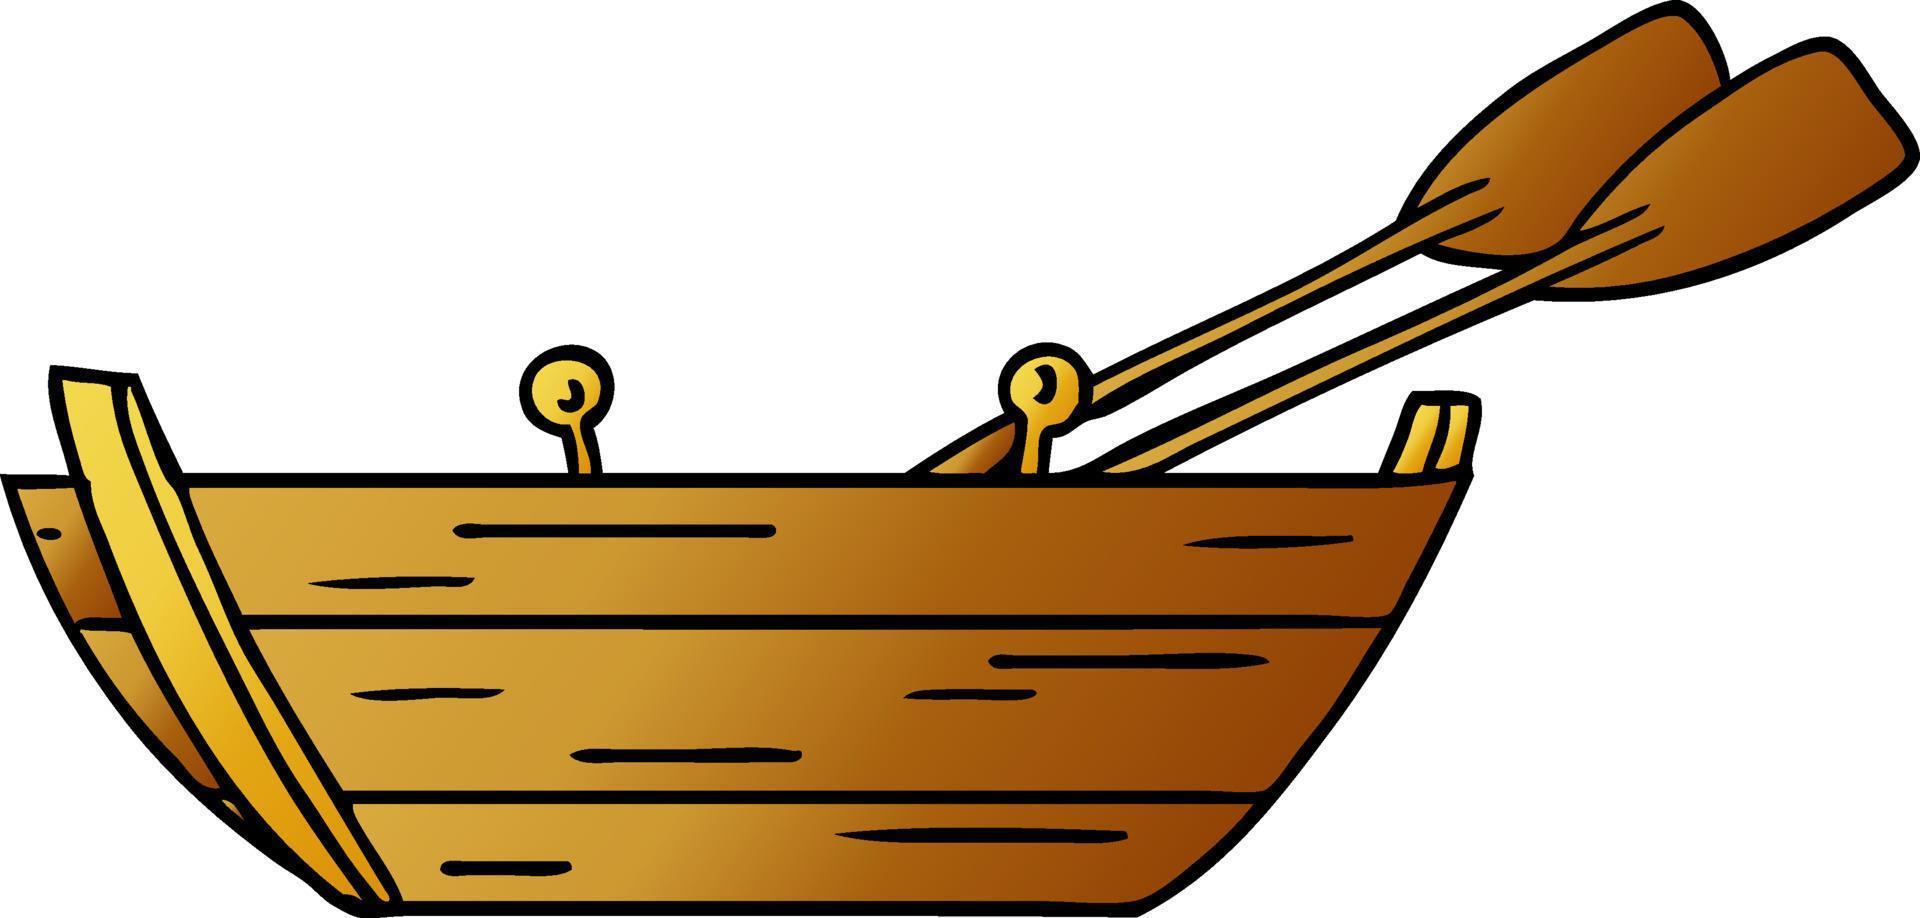 gradient cartoon doodle of a wooden boat vector